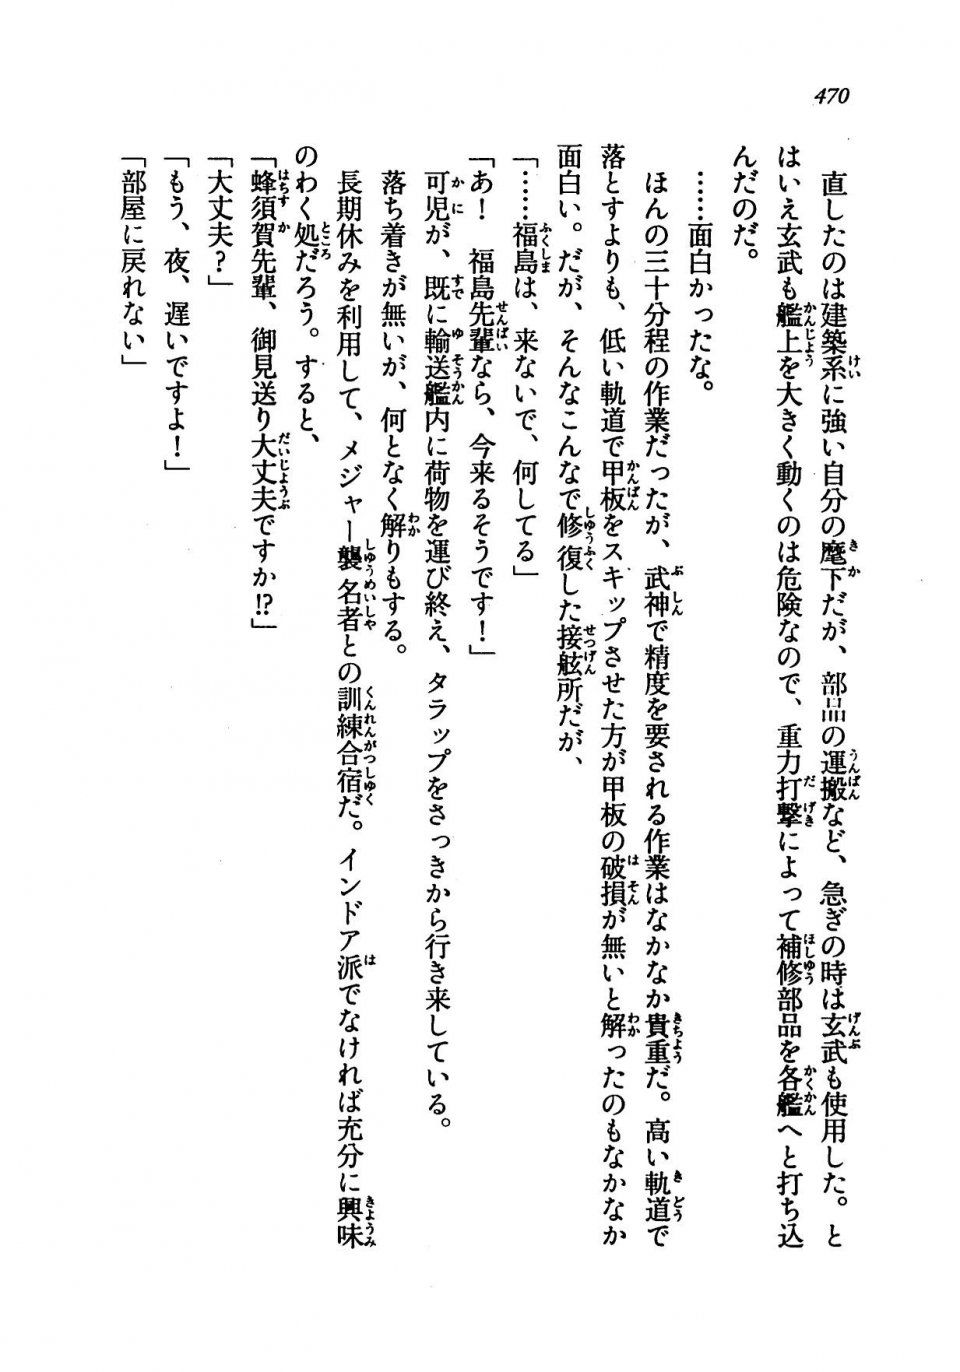 Kyoukai Senjou no Horizon LN Vol 19(8A) - Photo #470